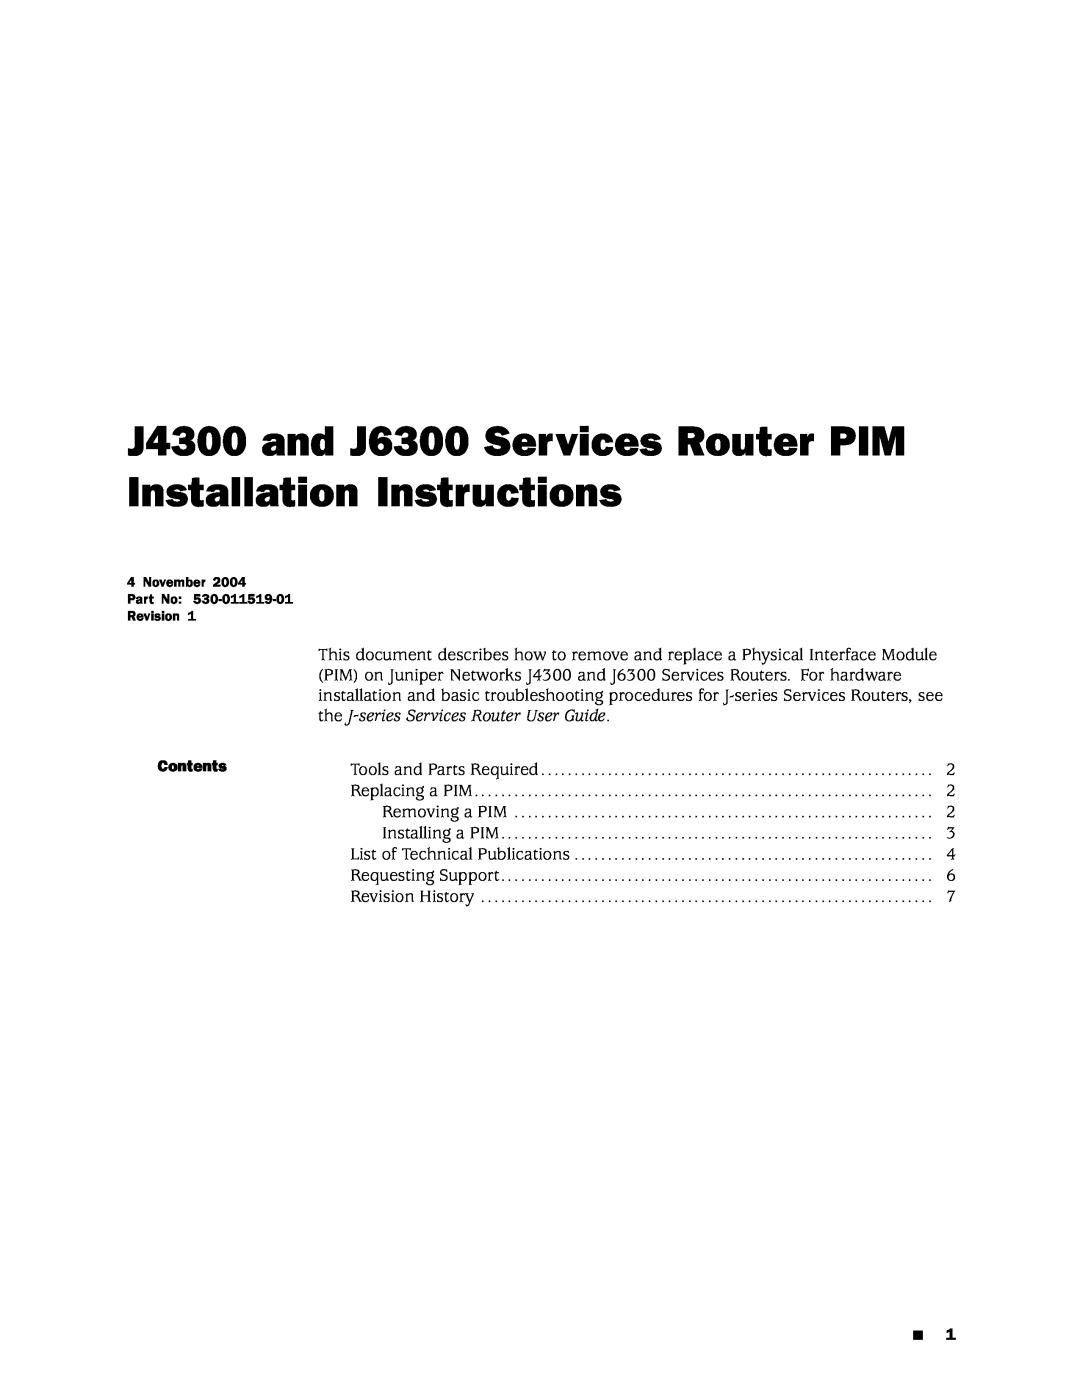 Juniper Networks installation instructions J4300 and J6300 Services Router PIM Installation Instructions 